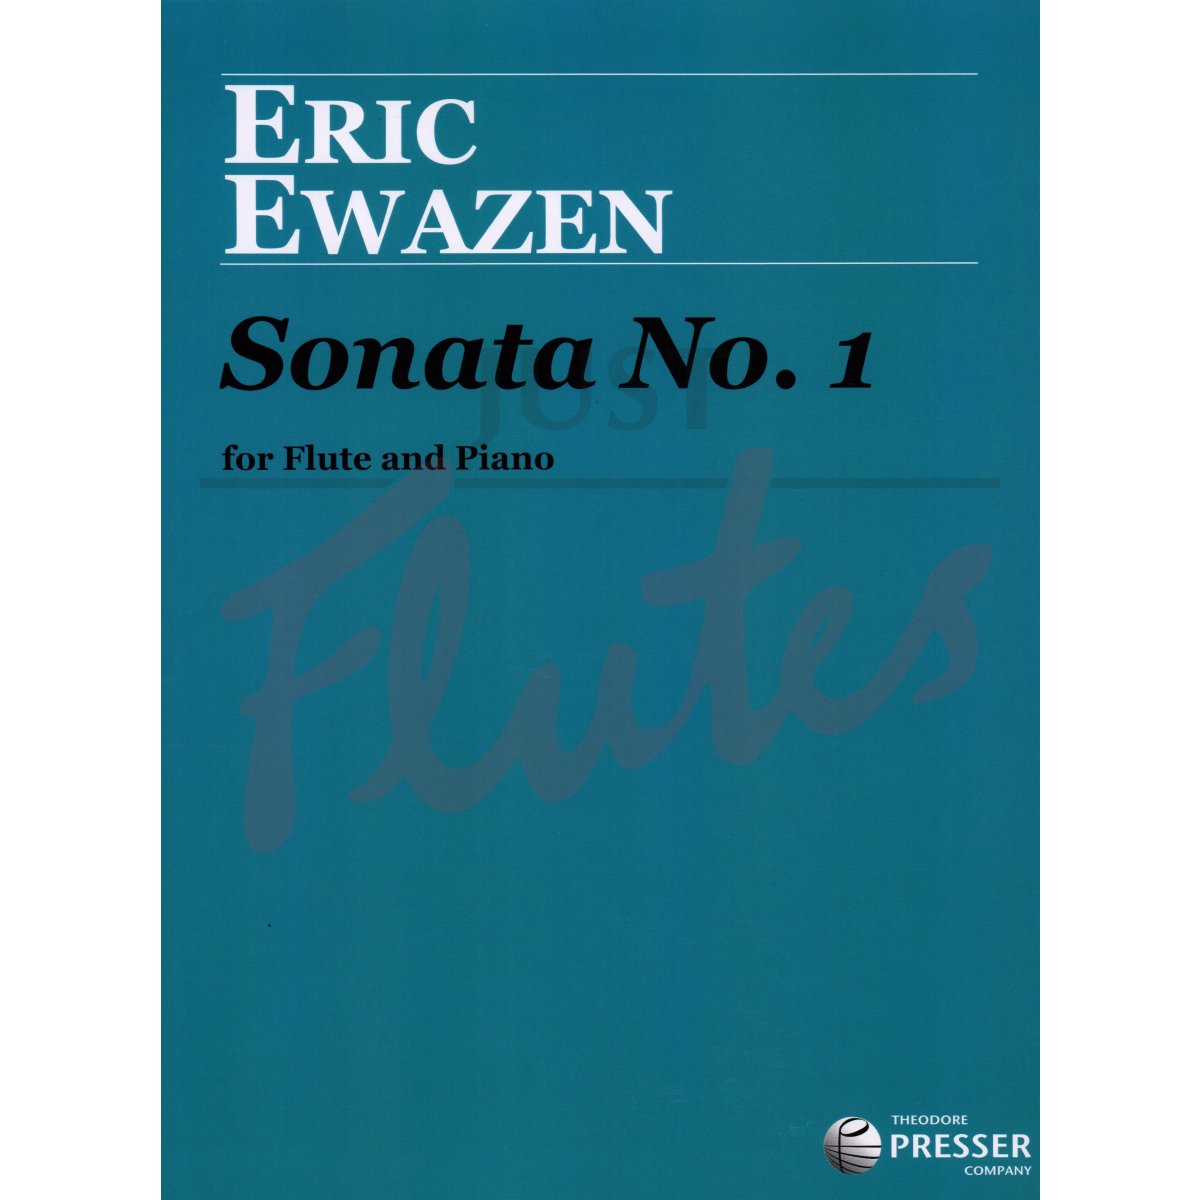 Sonata No. 1 for Flute and Piano